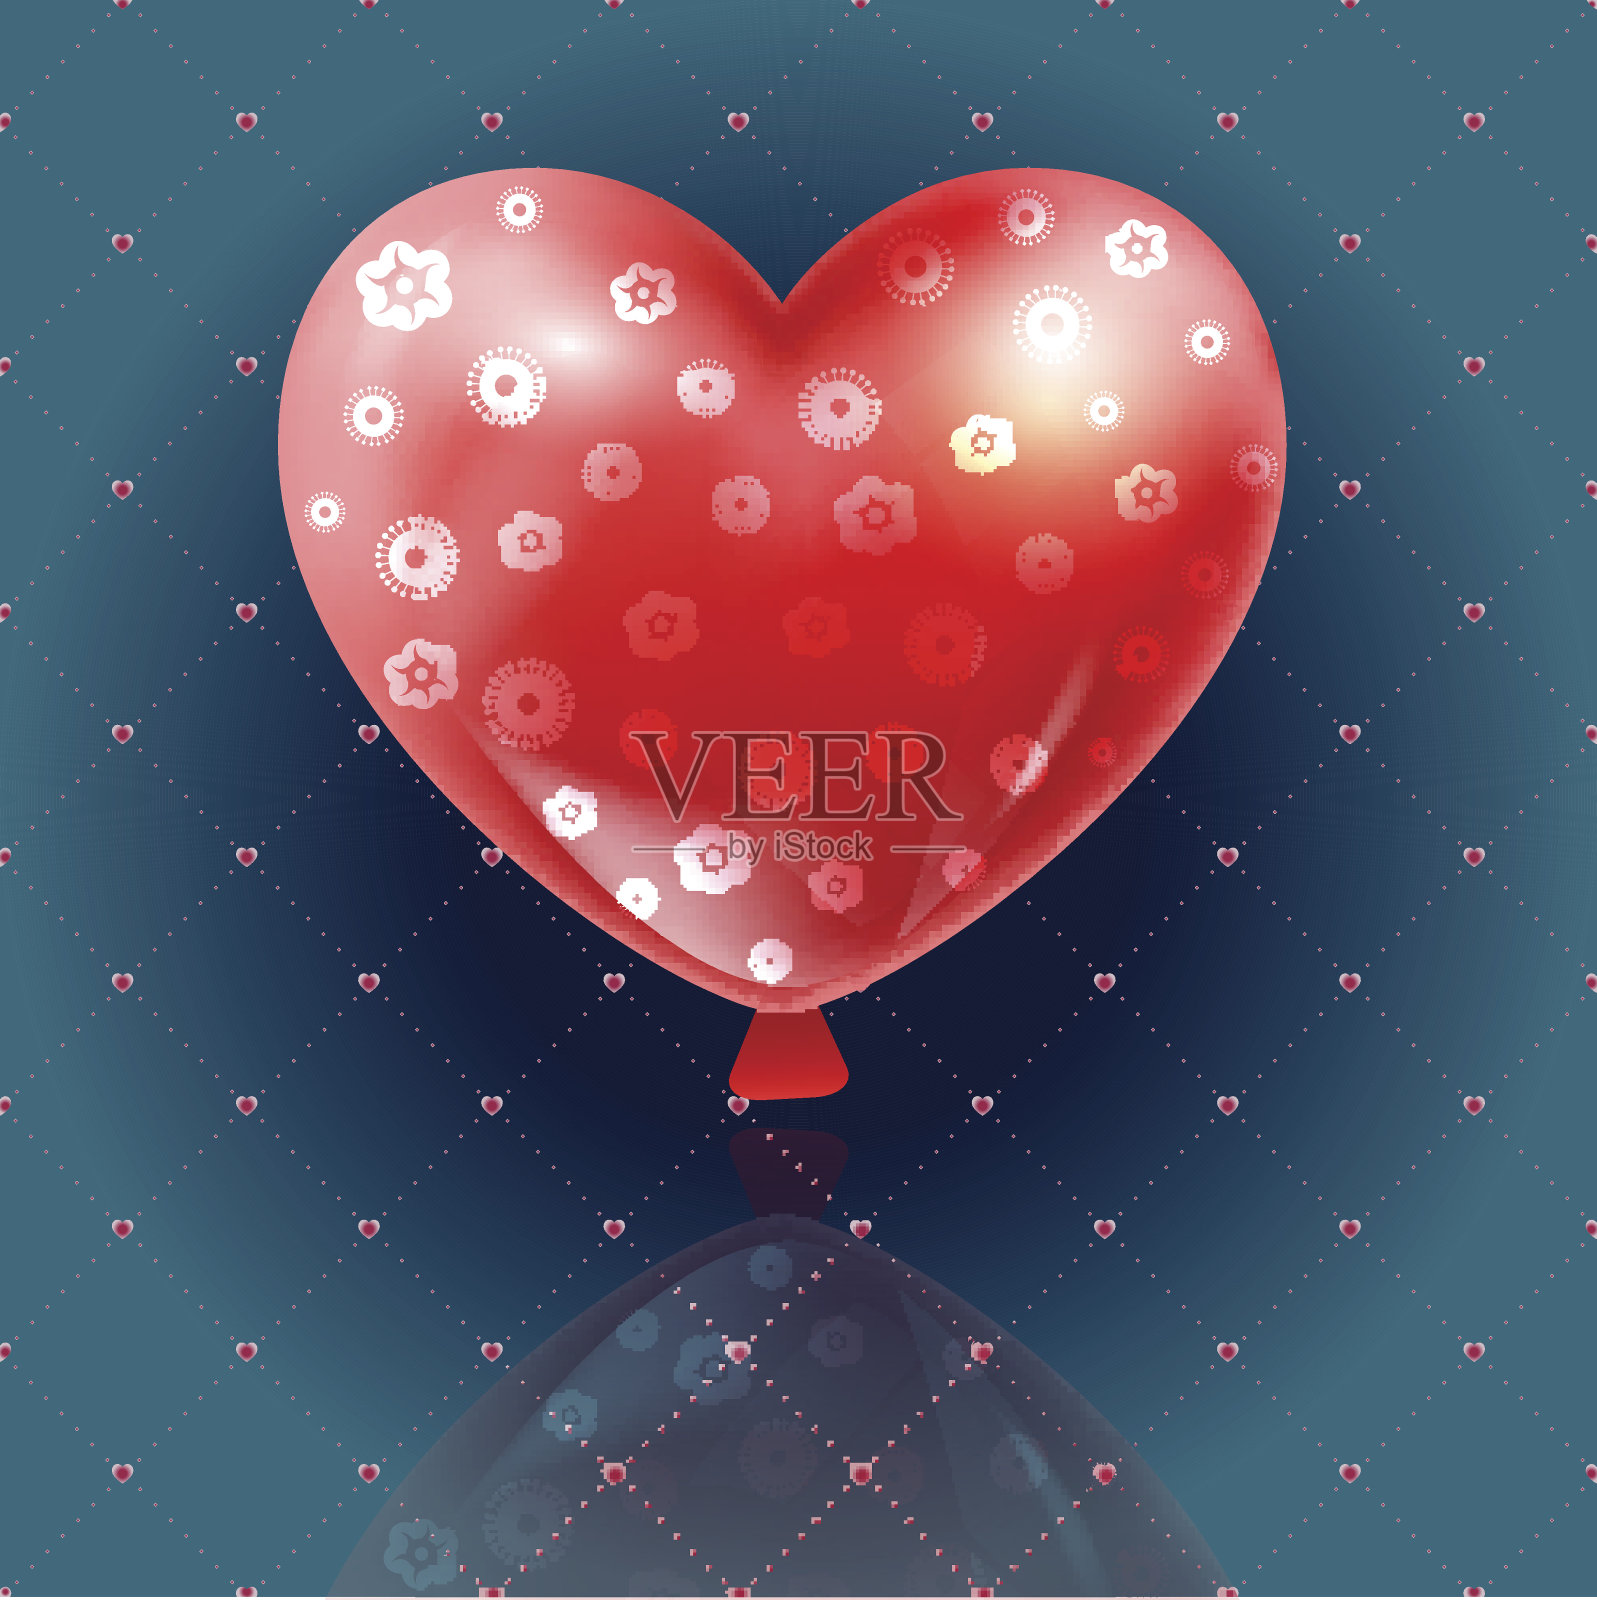 美丽的气球是心形的情人节礼物插画图片素材